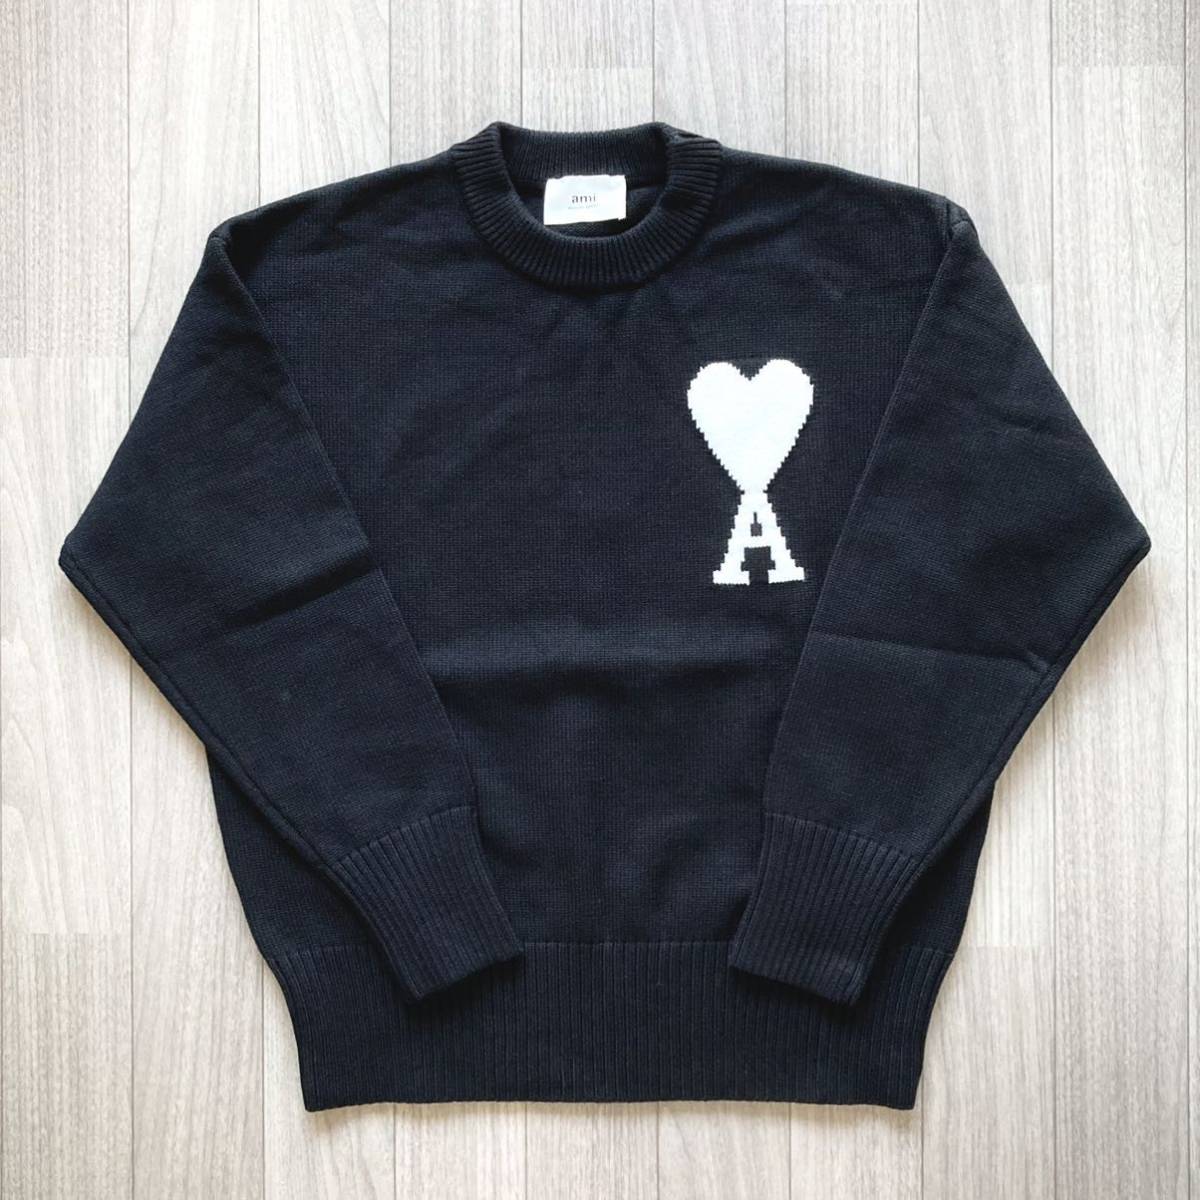 新品 amiparis AMI PARIS ニット セーター 黒 ハートロゴ-